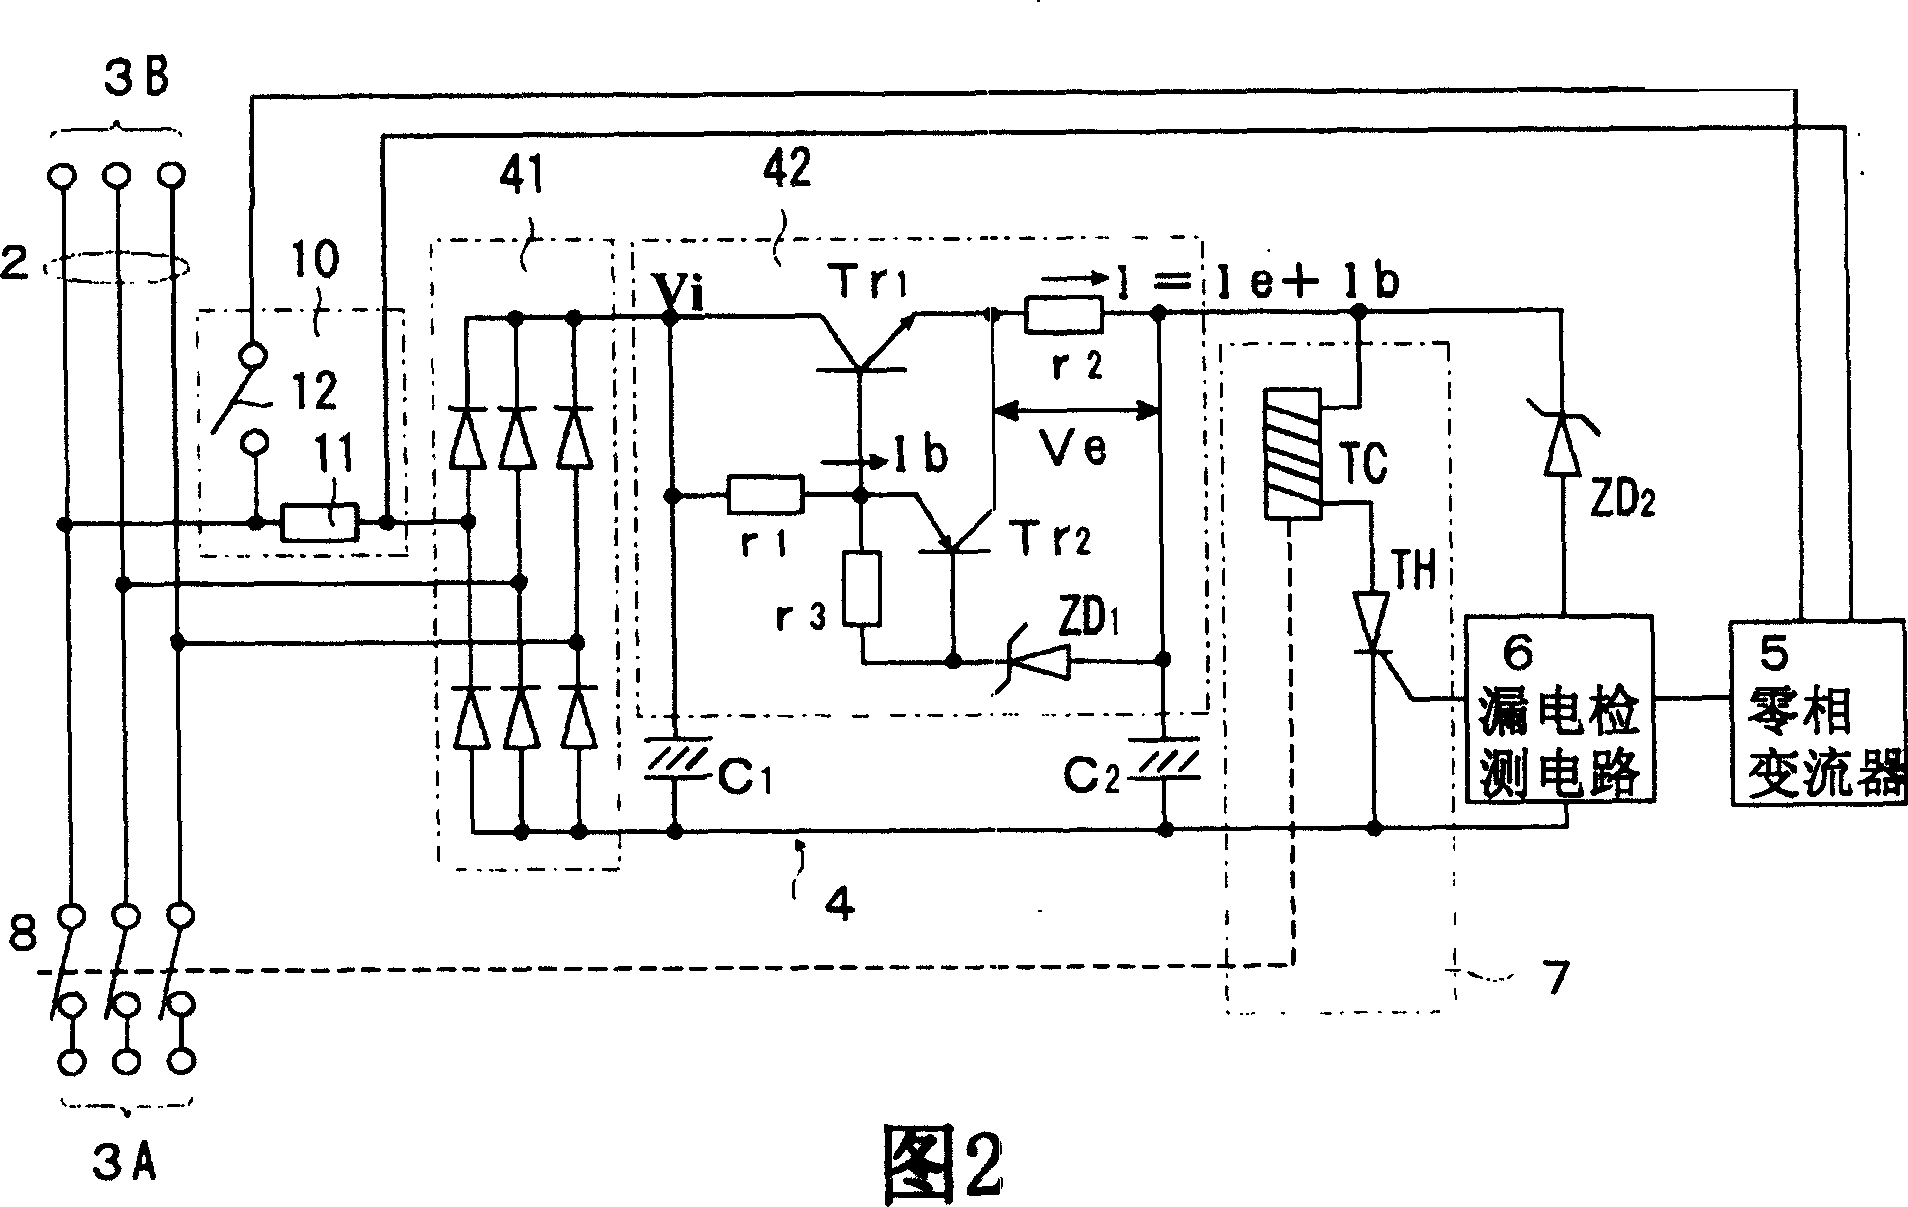 Residual current circuit breaker